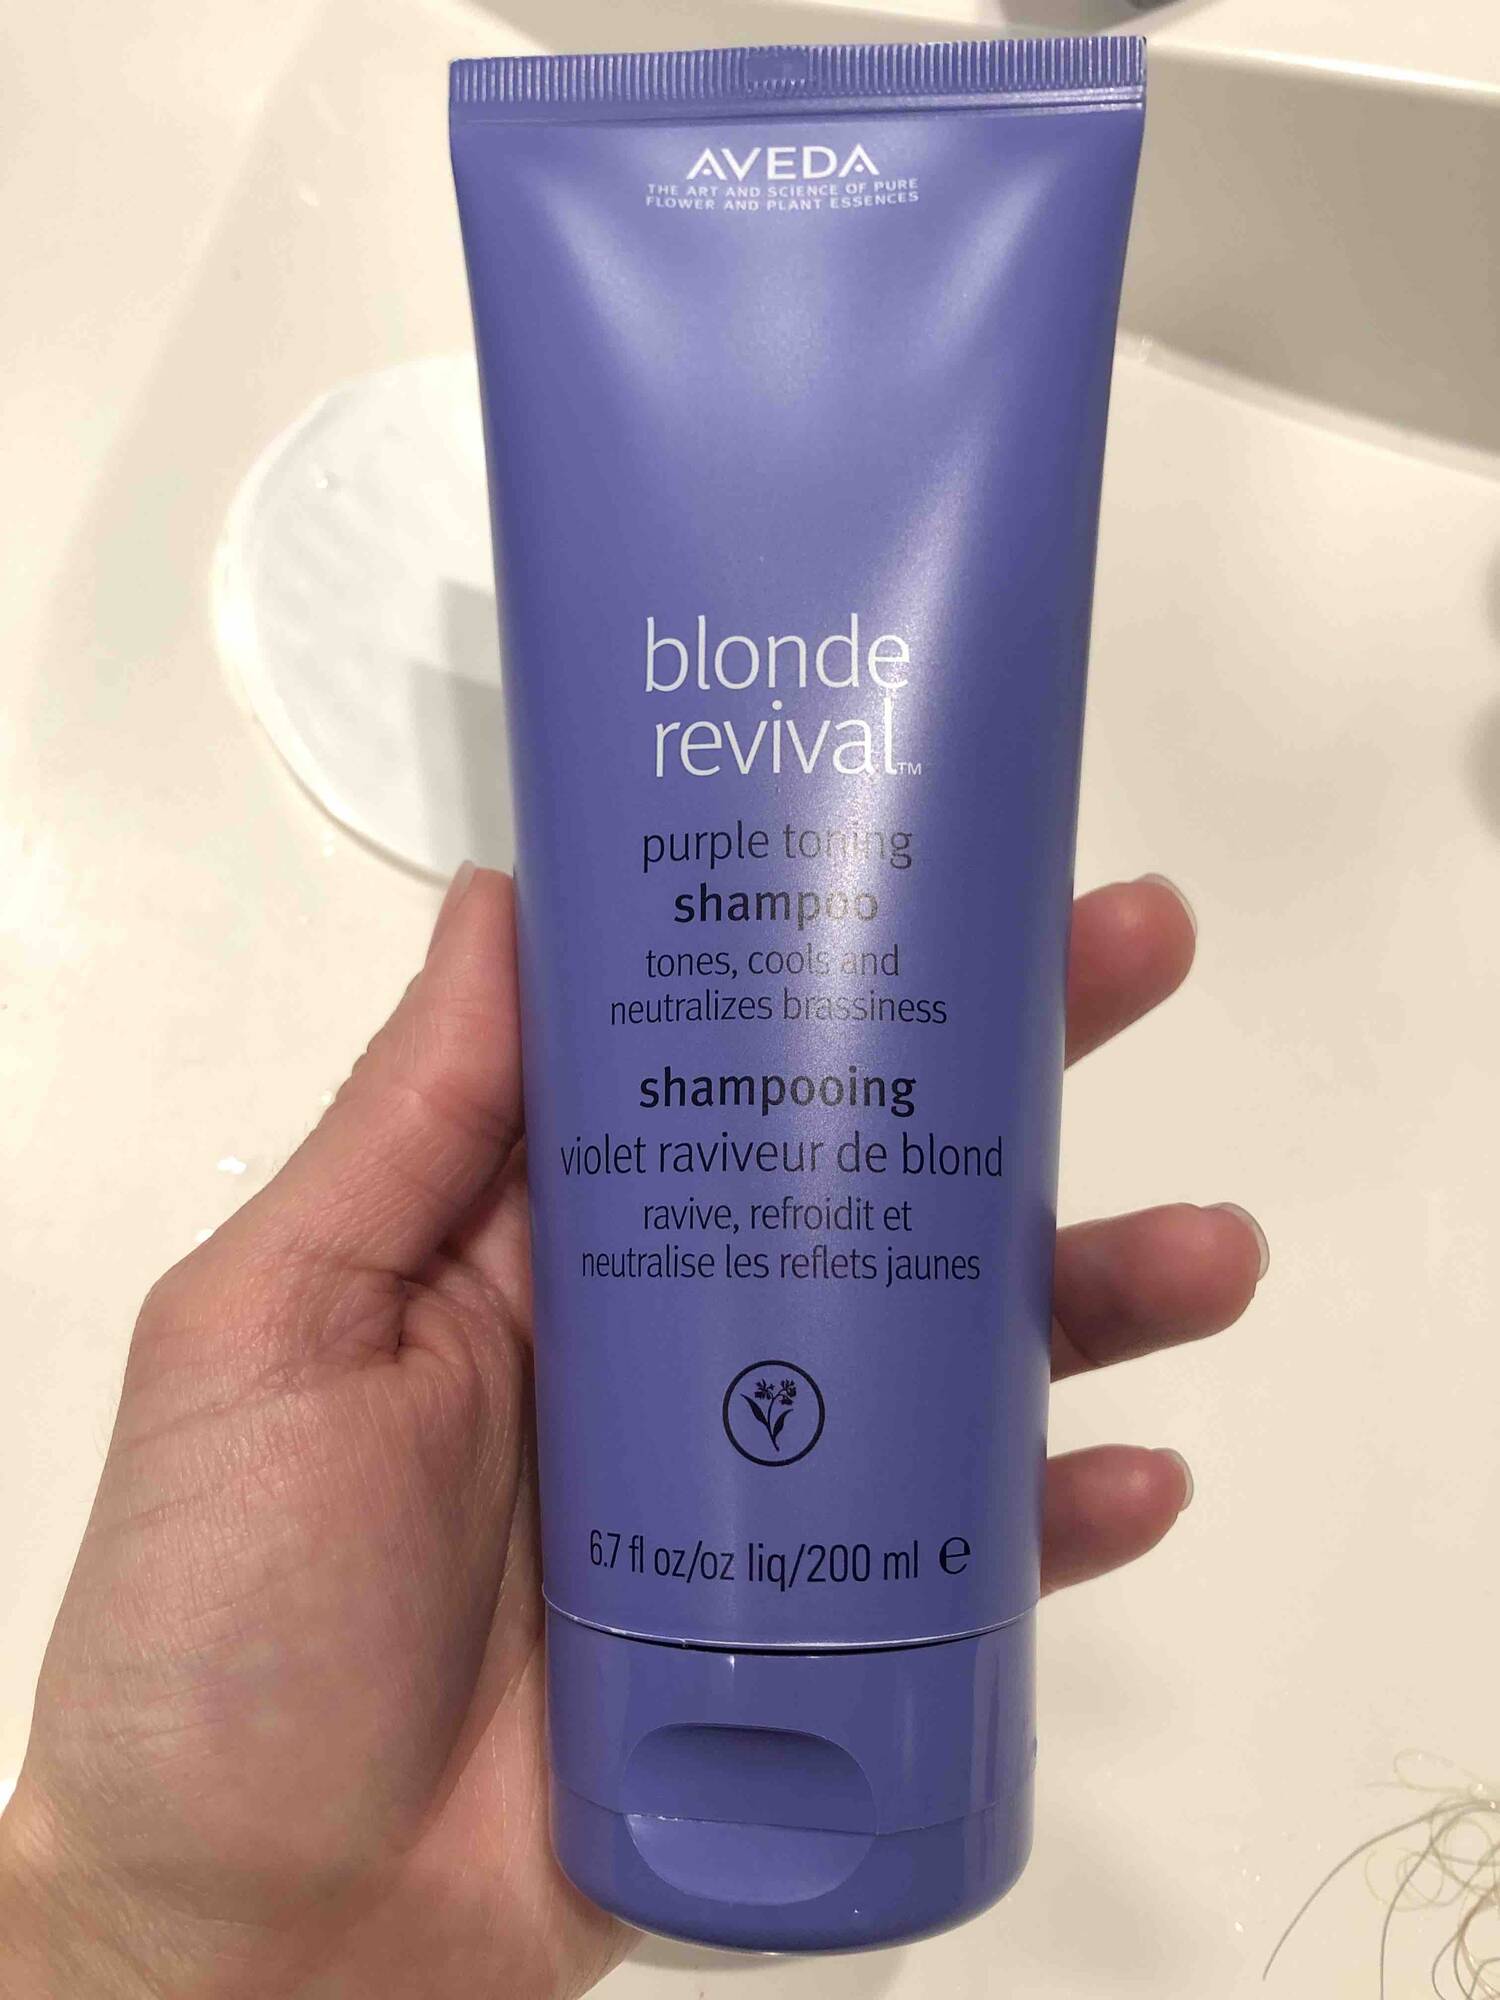 AVEDA - Blonde revival - Shampooing violet raviveur de blond